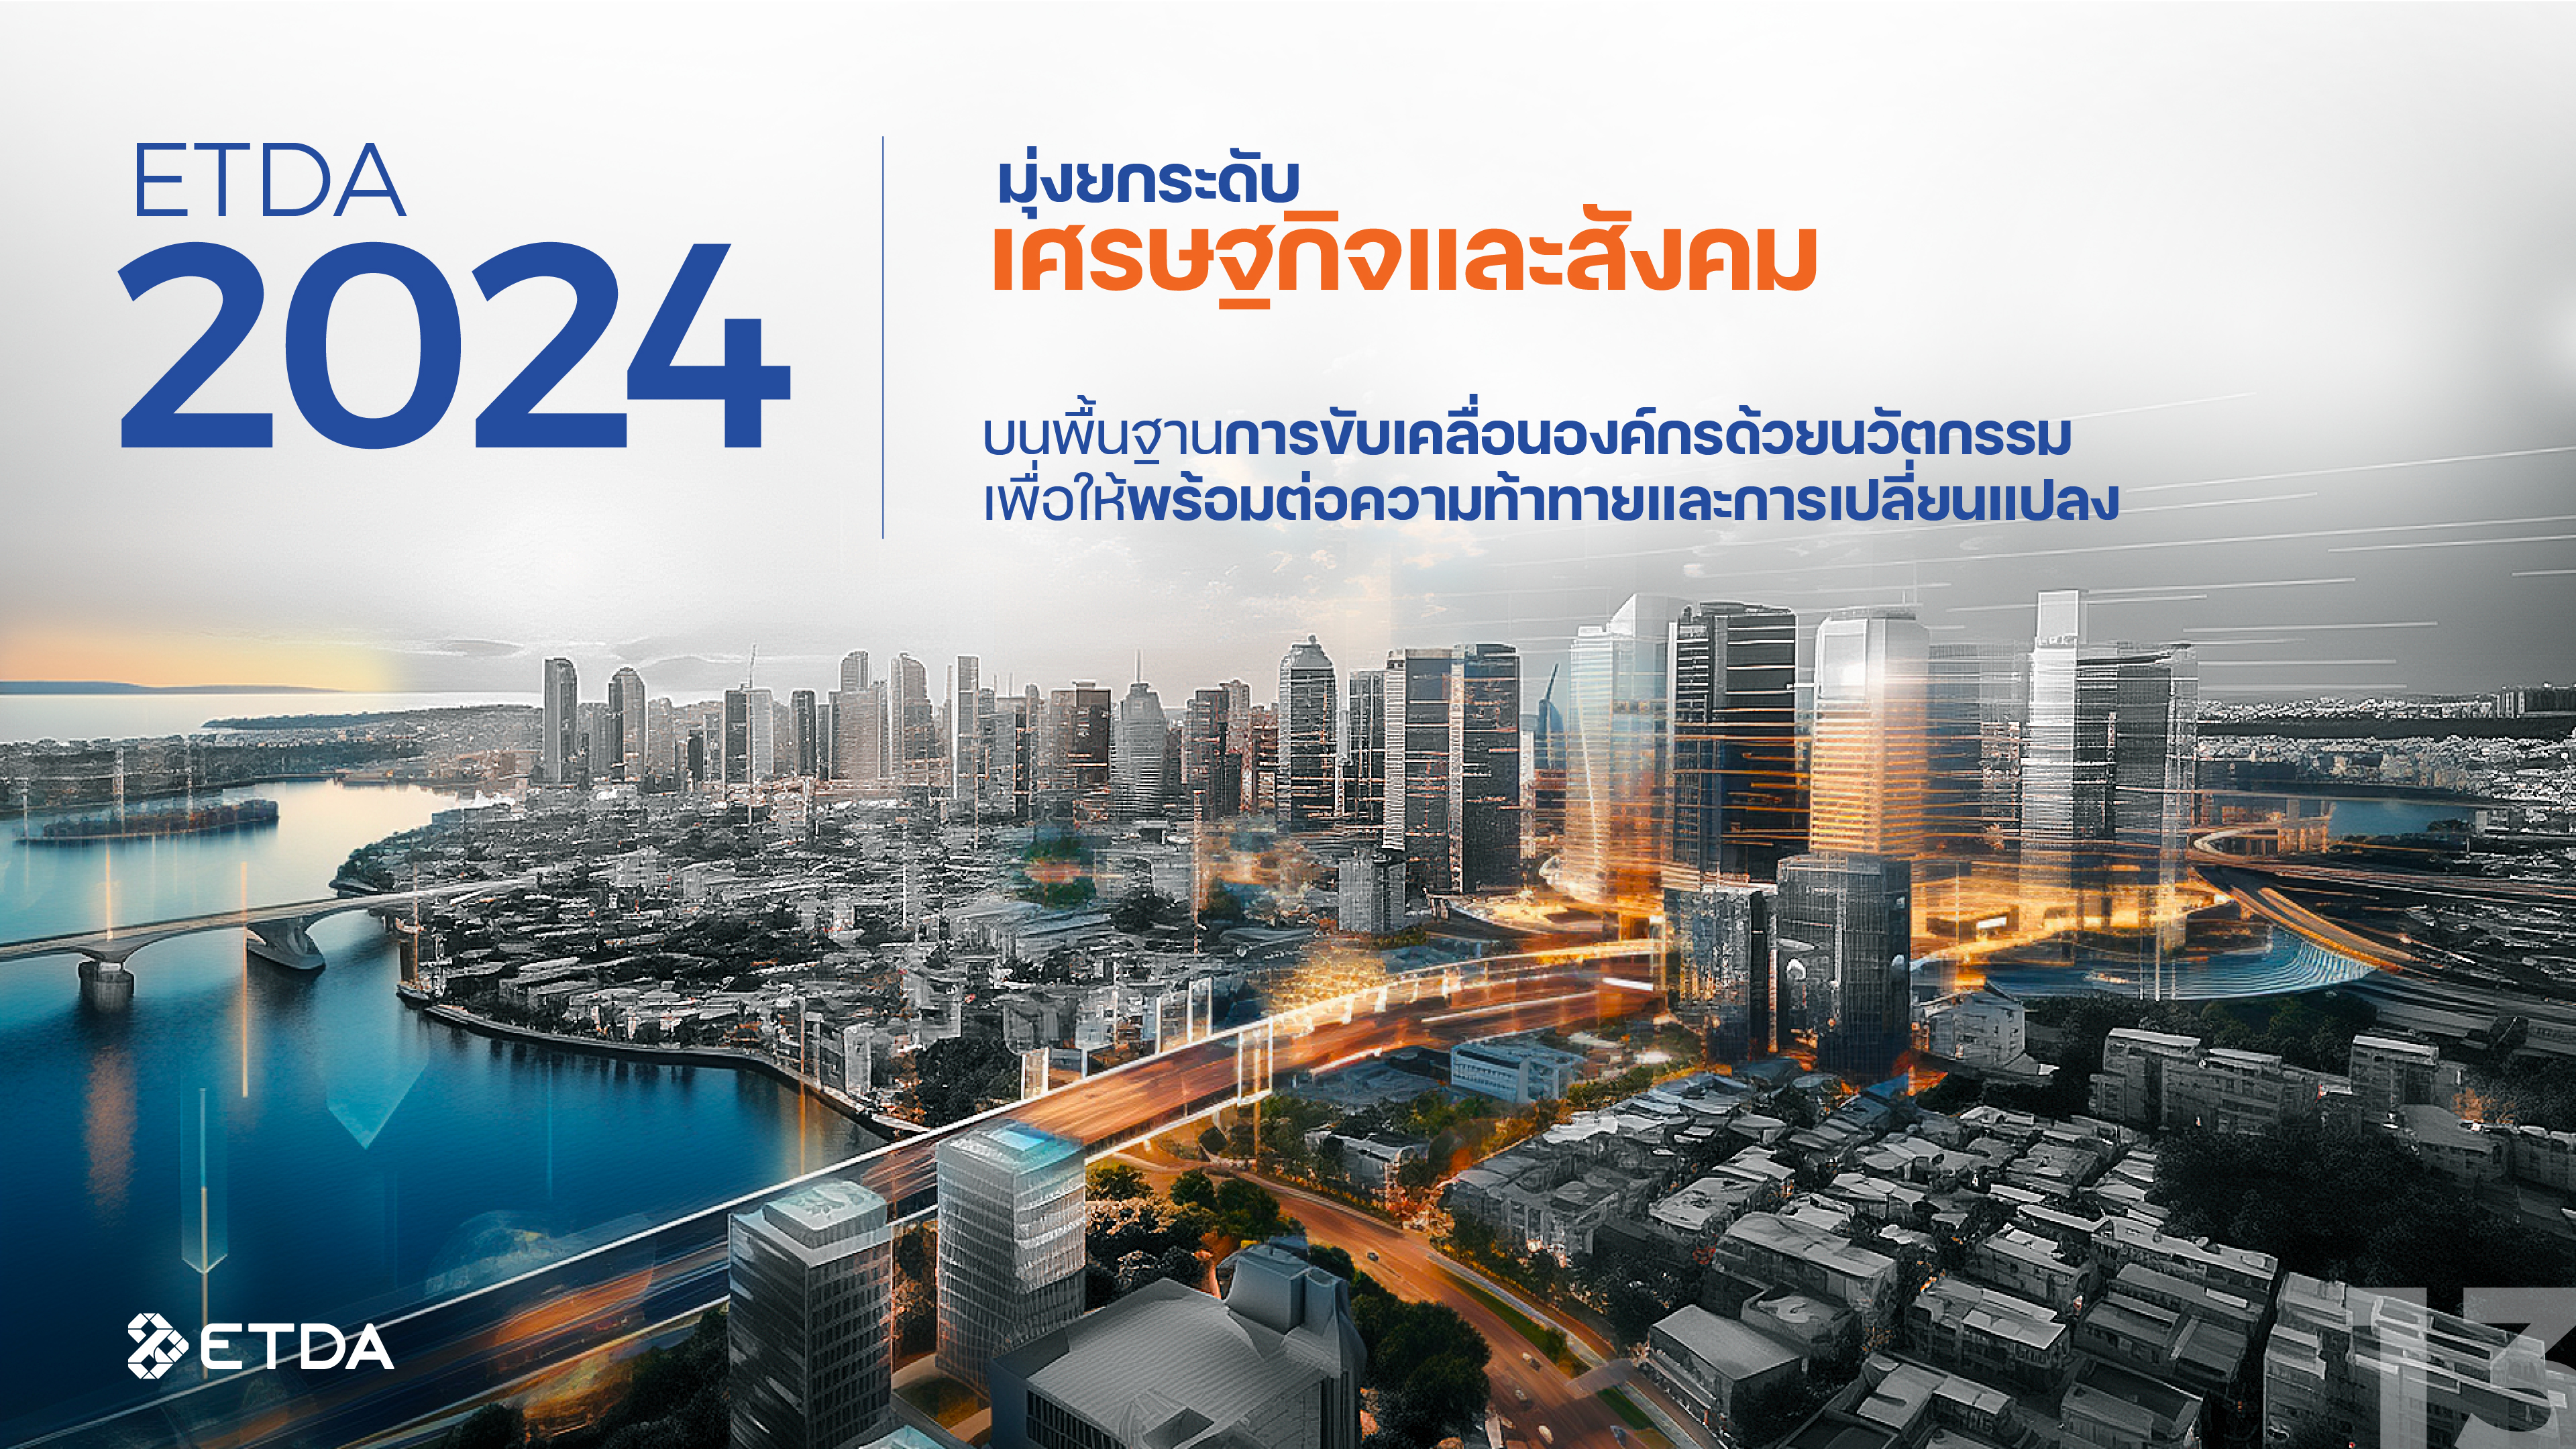 ETDA เปิดแผนปี 67 ติดเทอร์โบ 4 งานตอบโจทย์คนไทย เร่งพัฒนาธุรกรรมออนไลน์ ให้คนไทยชีวิตดีด้วยดิจิทัล